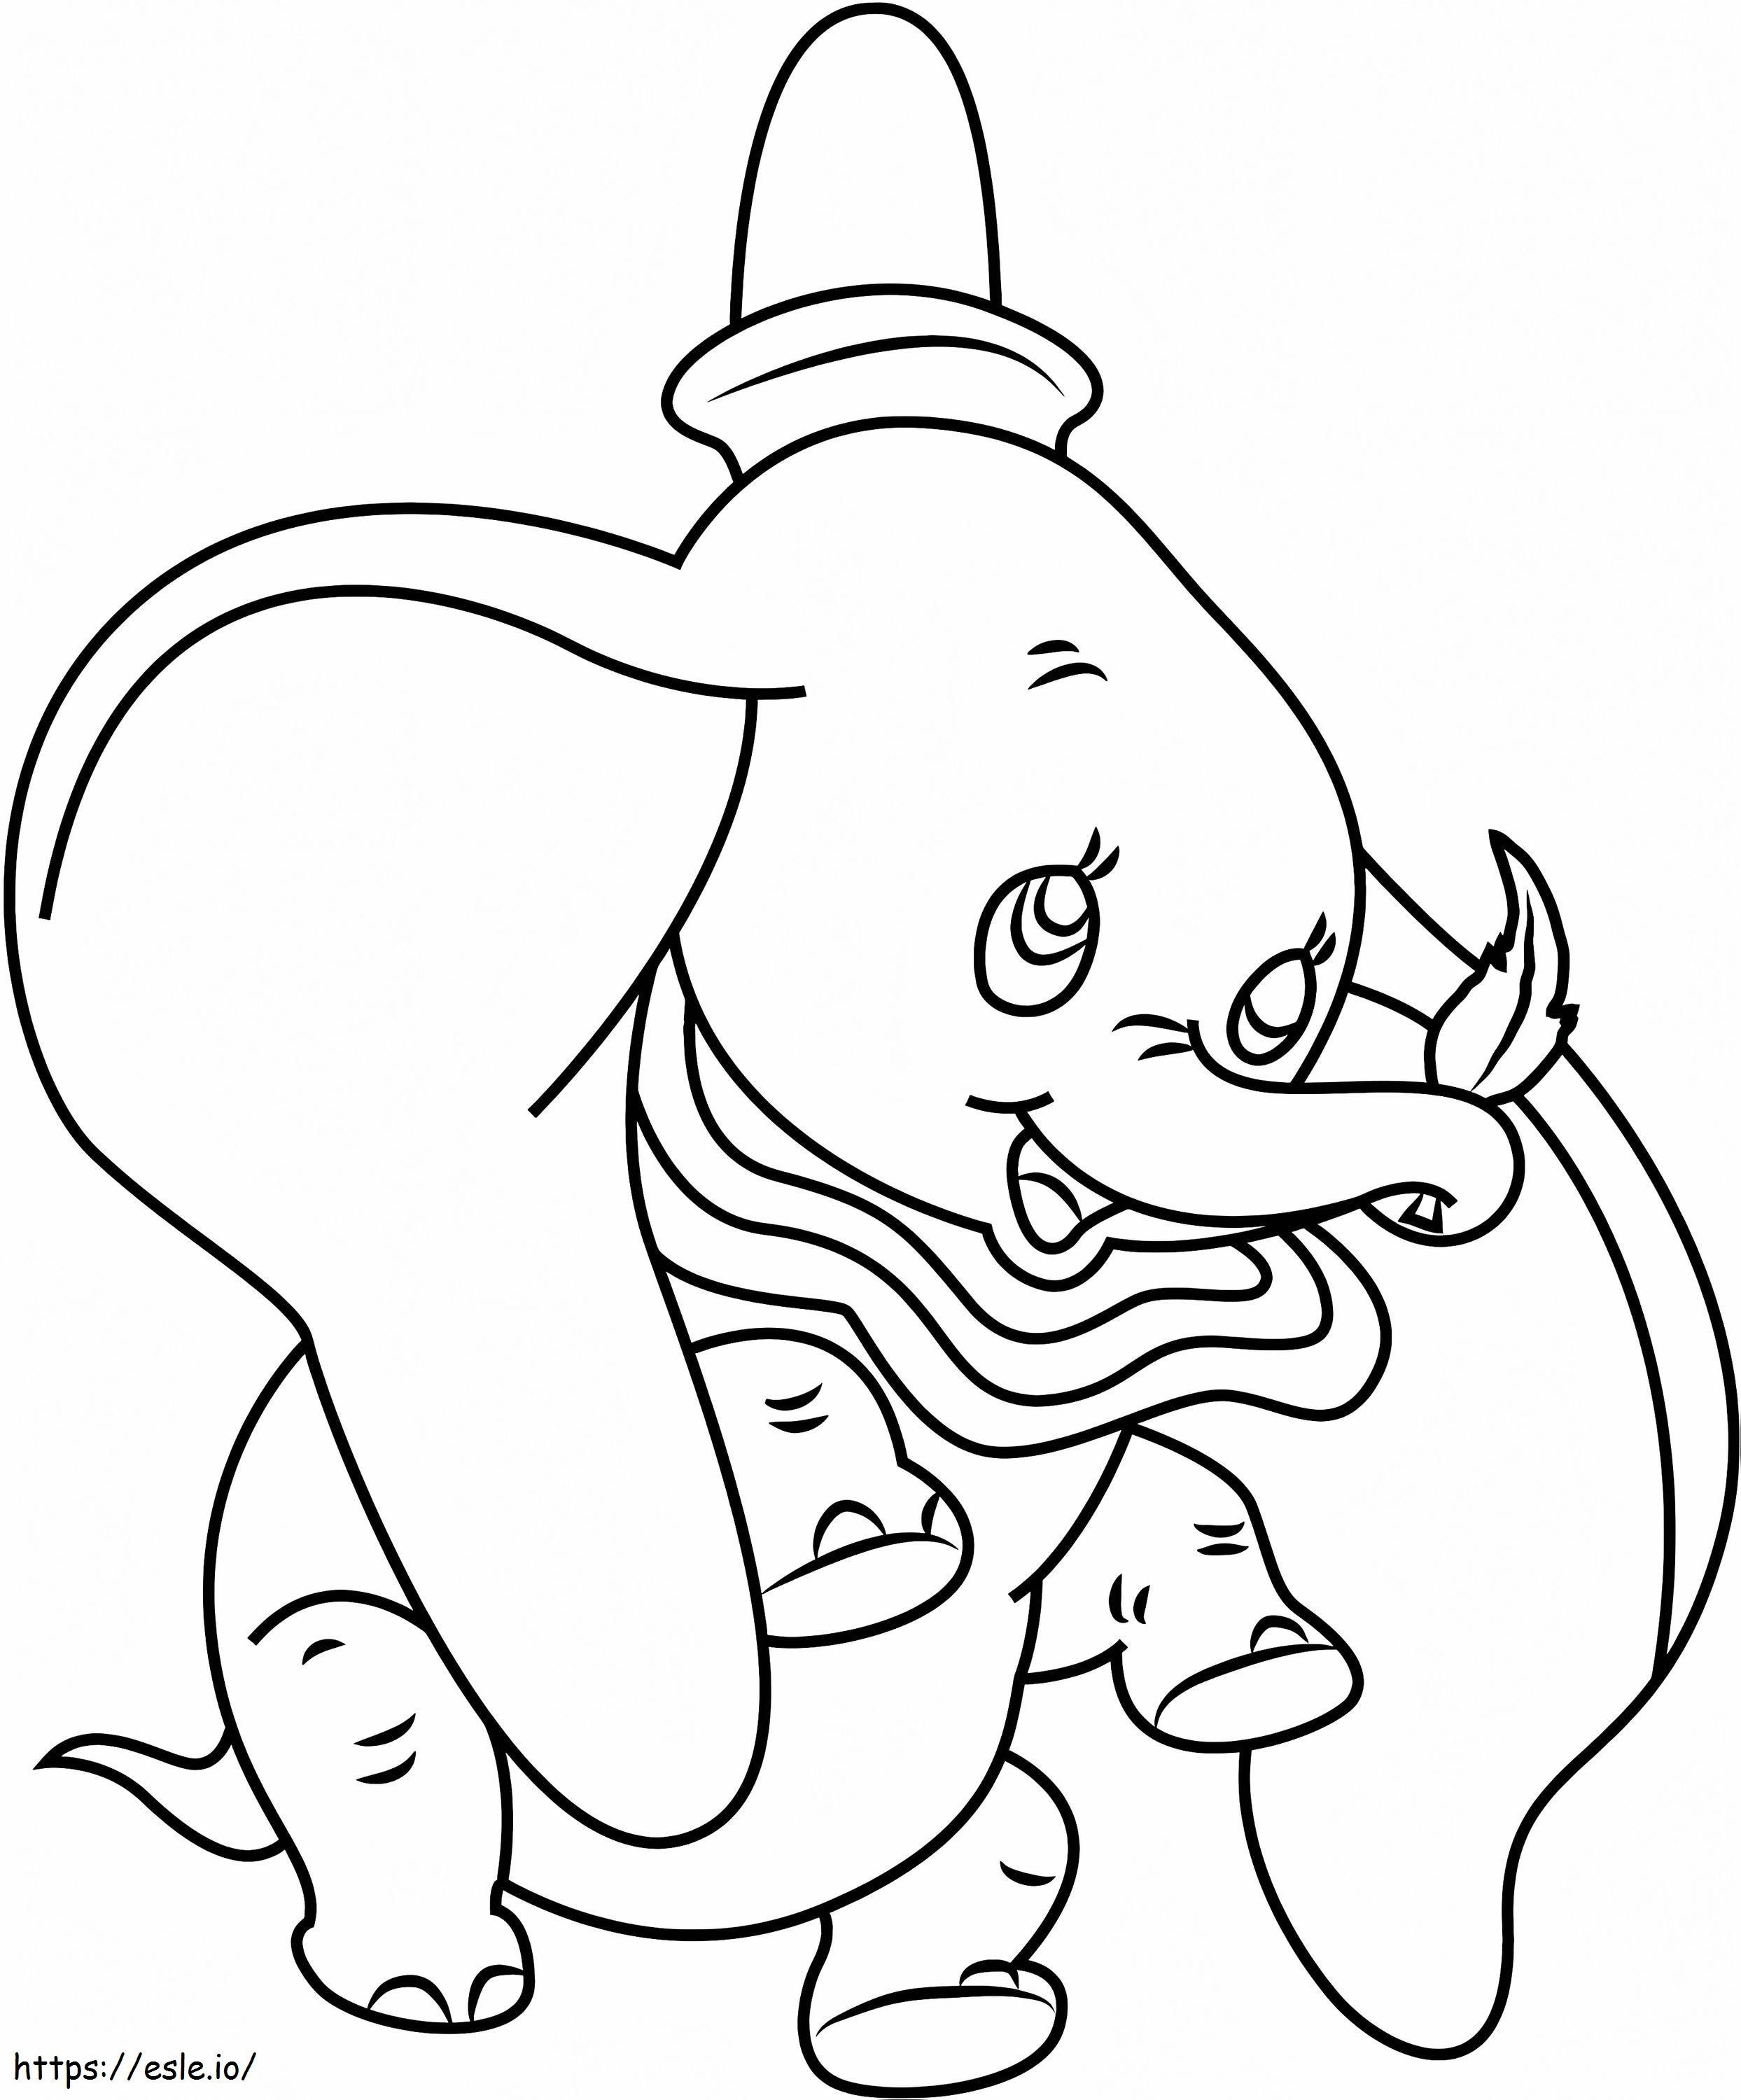 1530929502 Dumbo Tutma Yaprağı A4 boyama